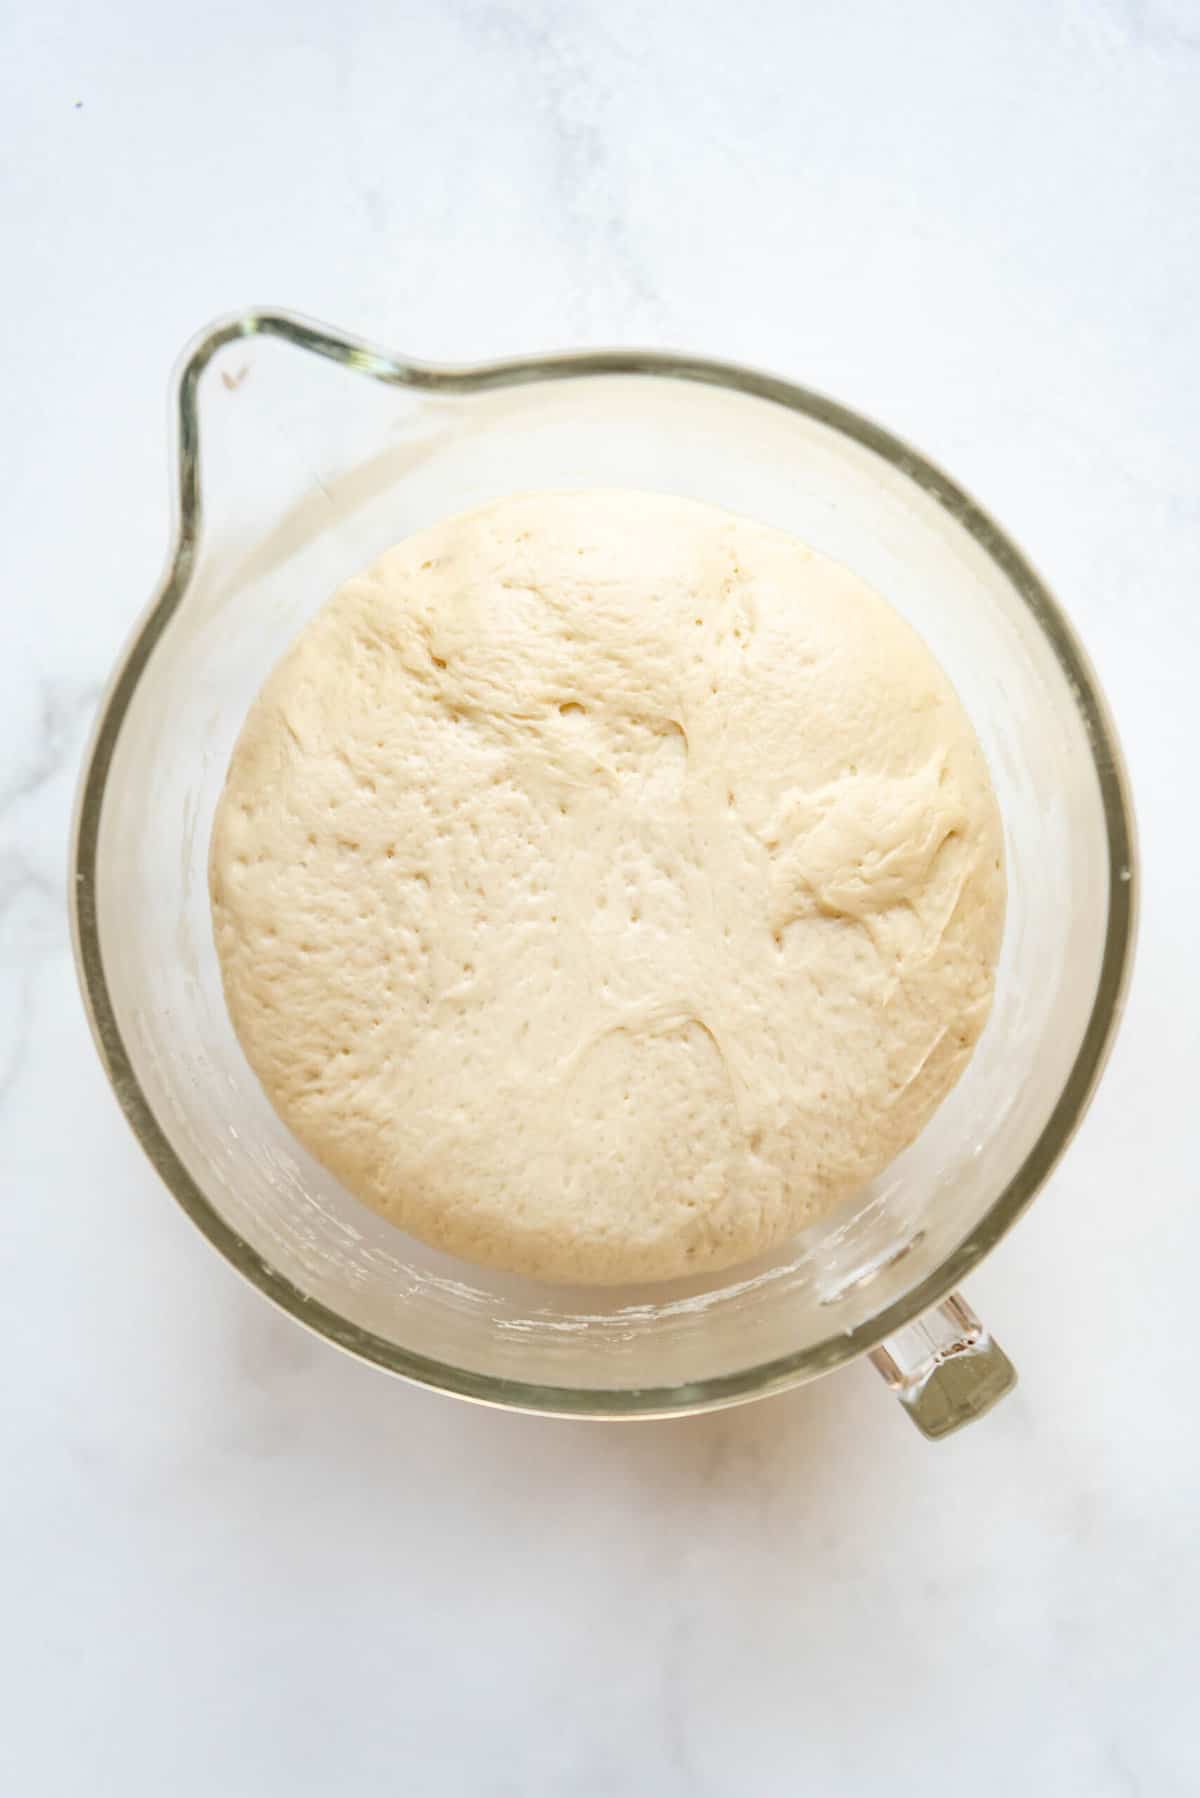 Risen Runza dough in a large glass mixing bowl.